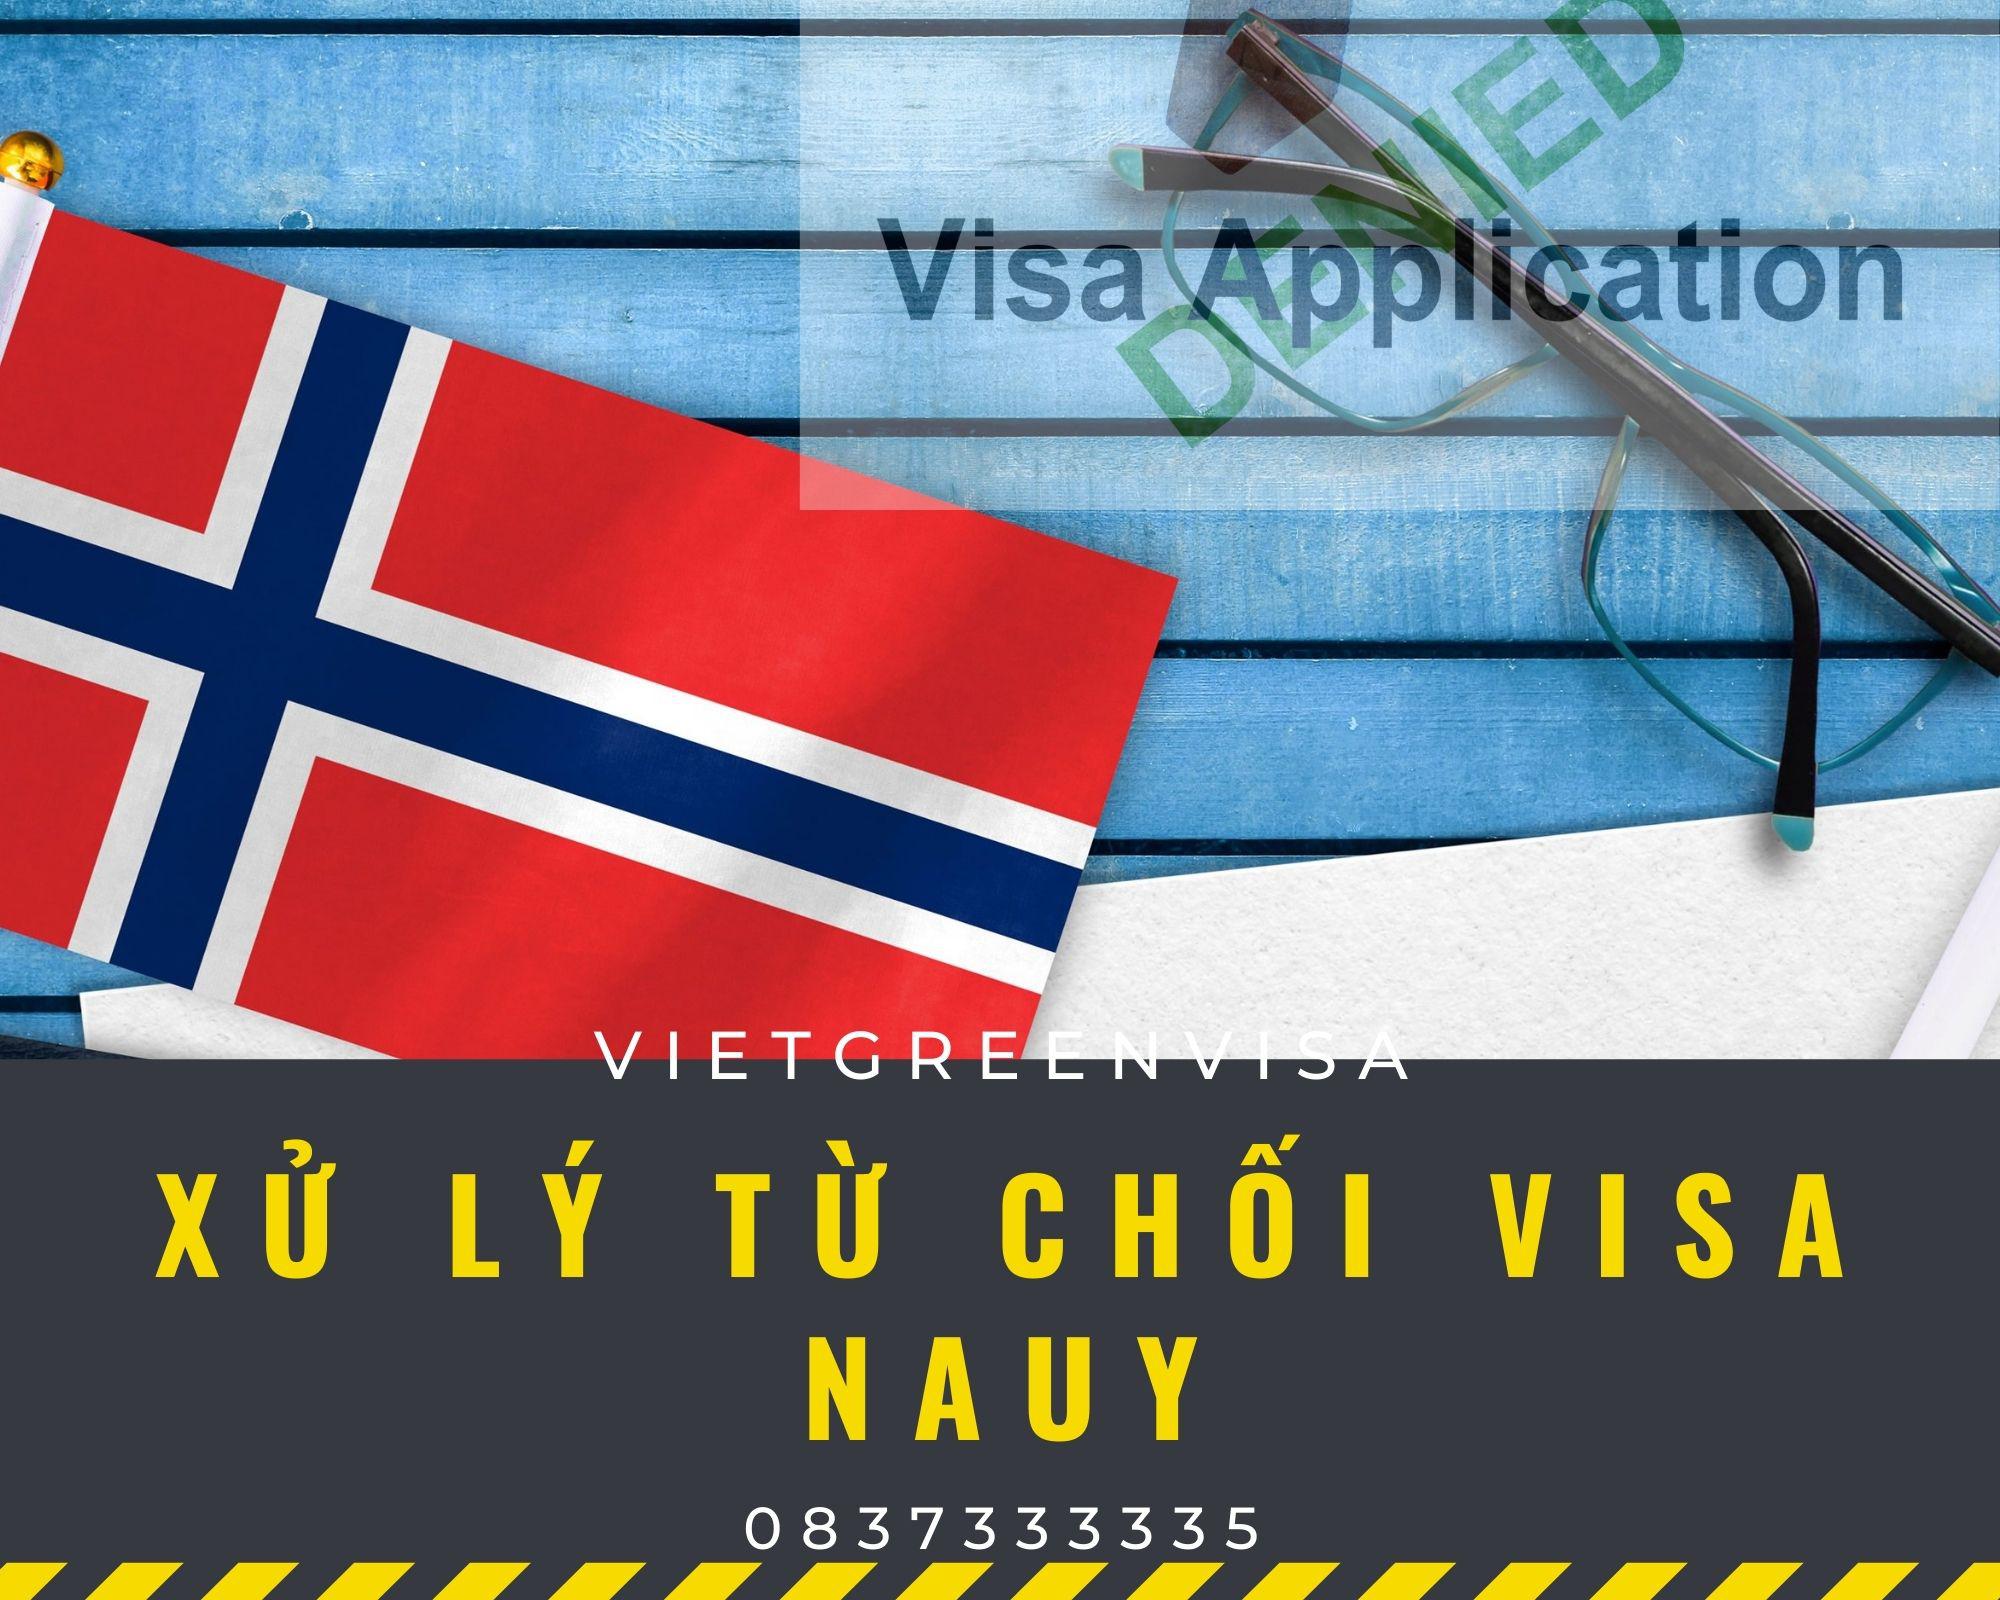 Dịch vụ xử lý visa Nauy bị từ chối thành công đến 99%